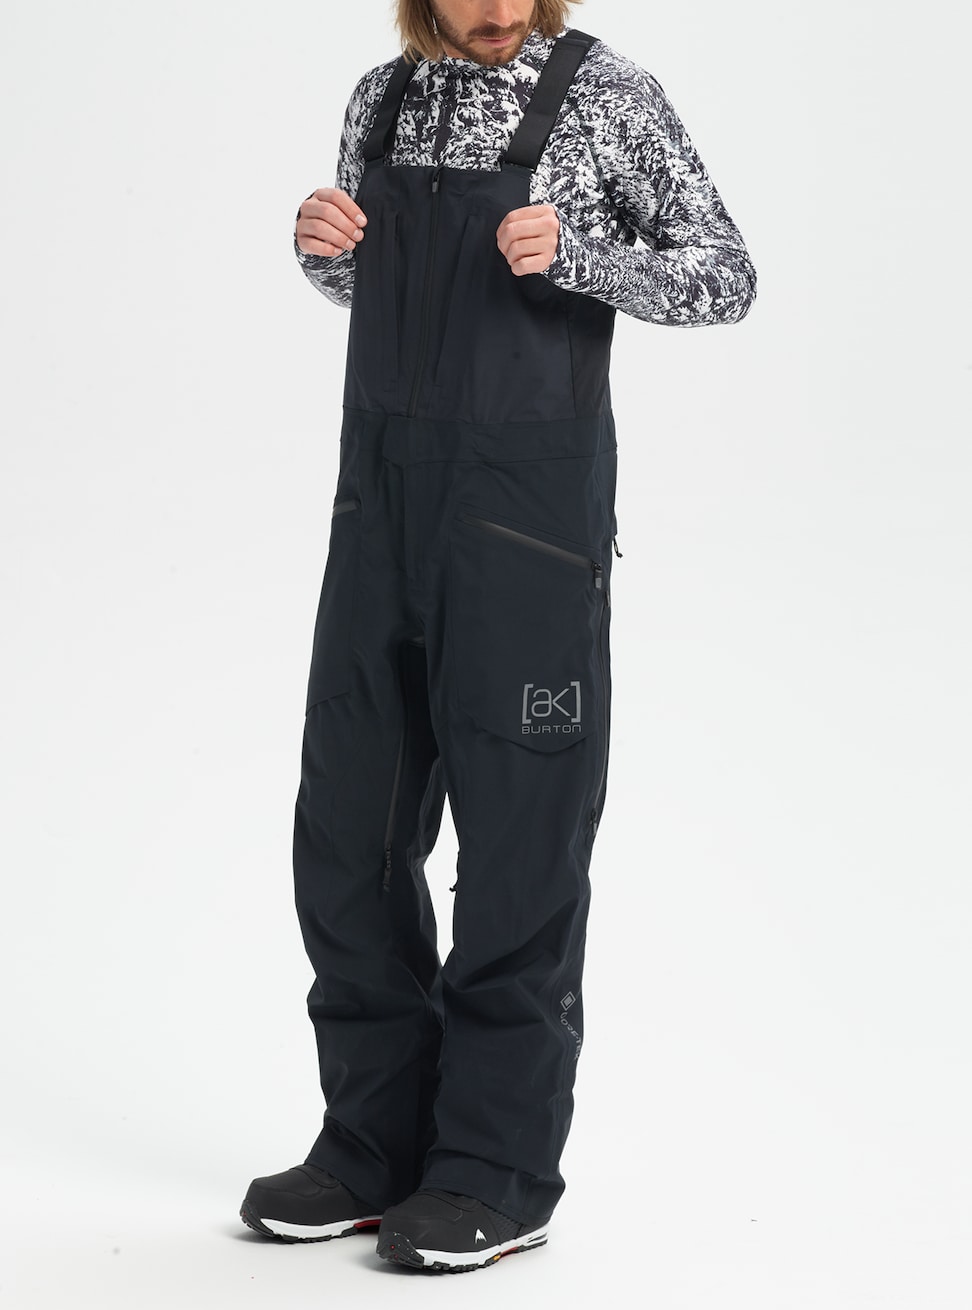 Burton AK Gore-tex 3L Freebird BIB men's snowboard pants true black